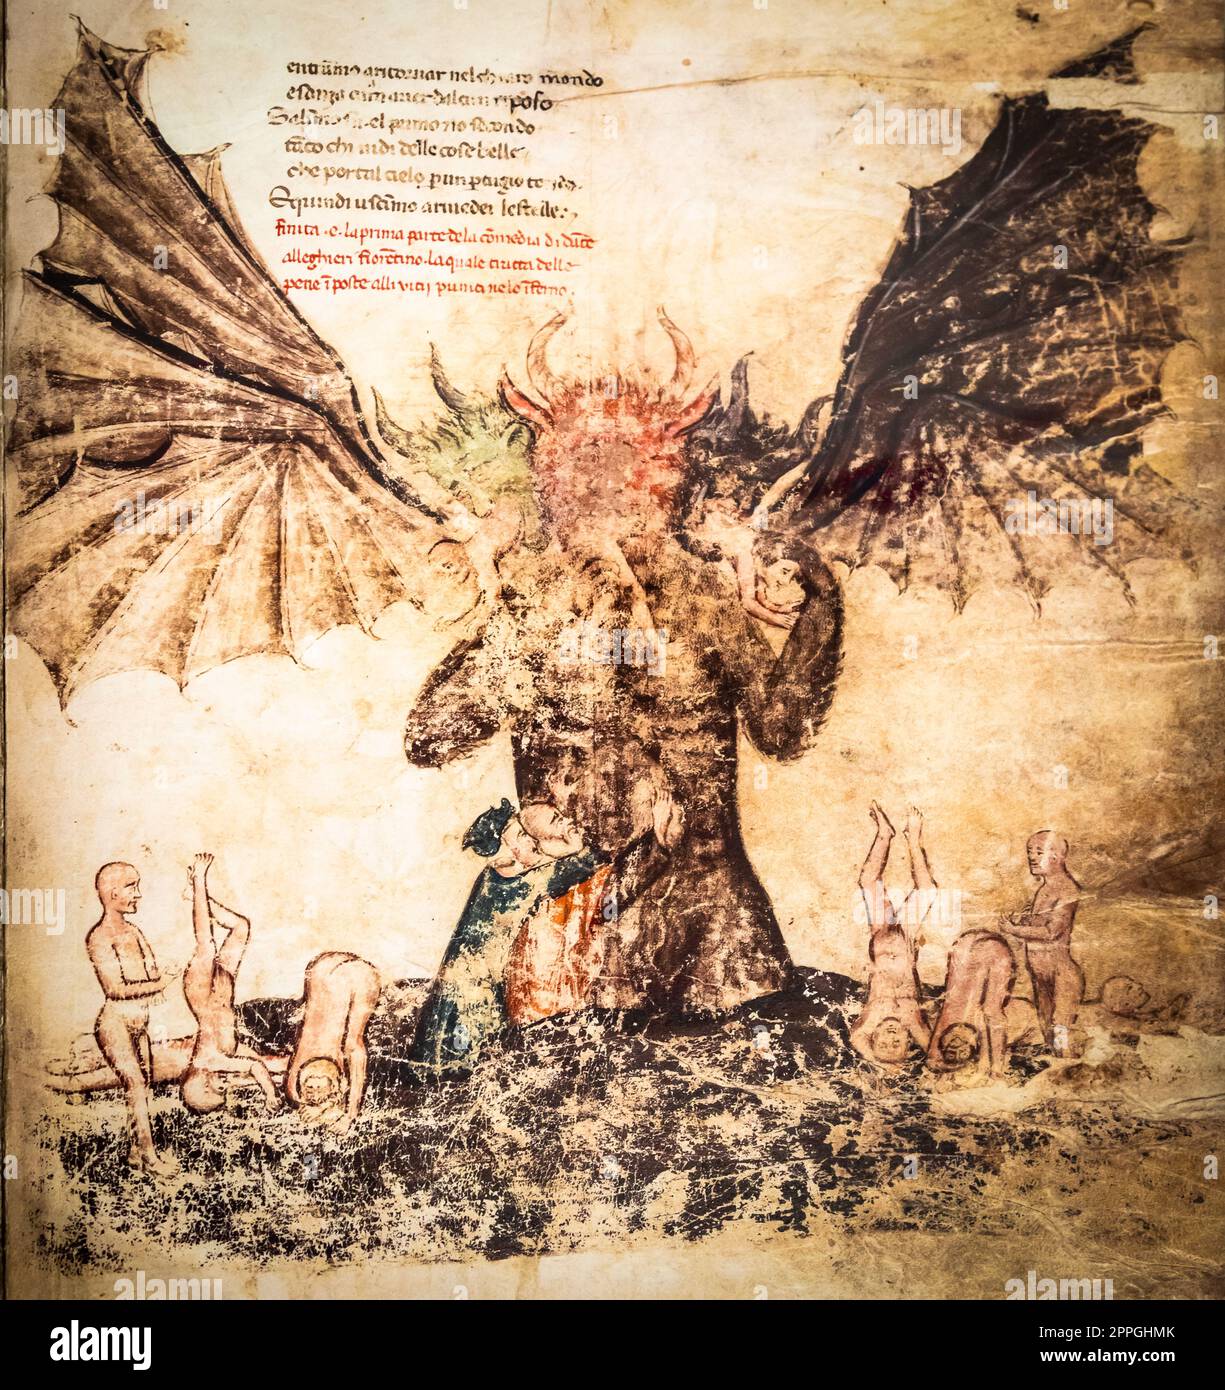 Foglio manoscritto antico. Libro gotico con illustrazione satanica dell'inferno. Foto Stock